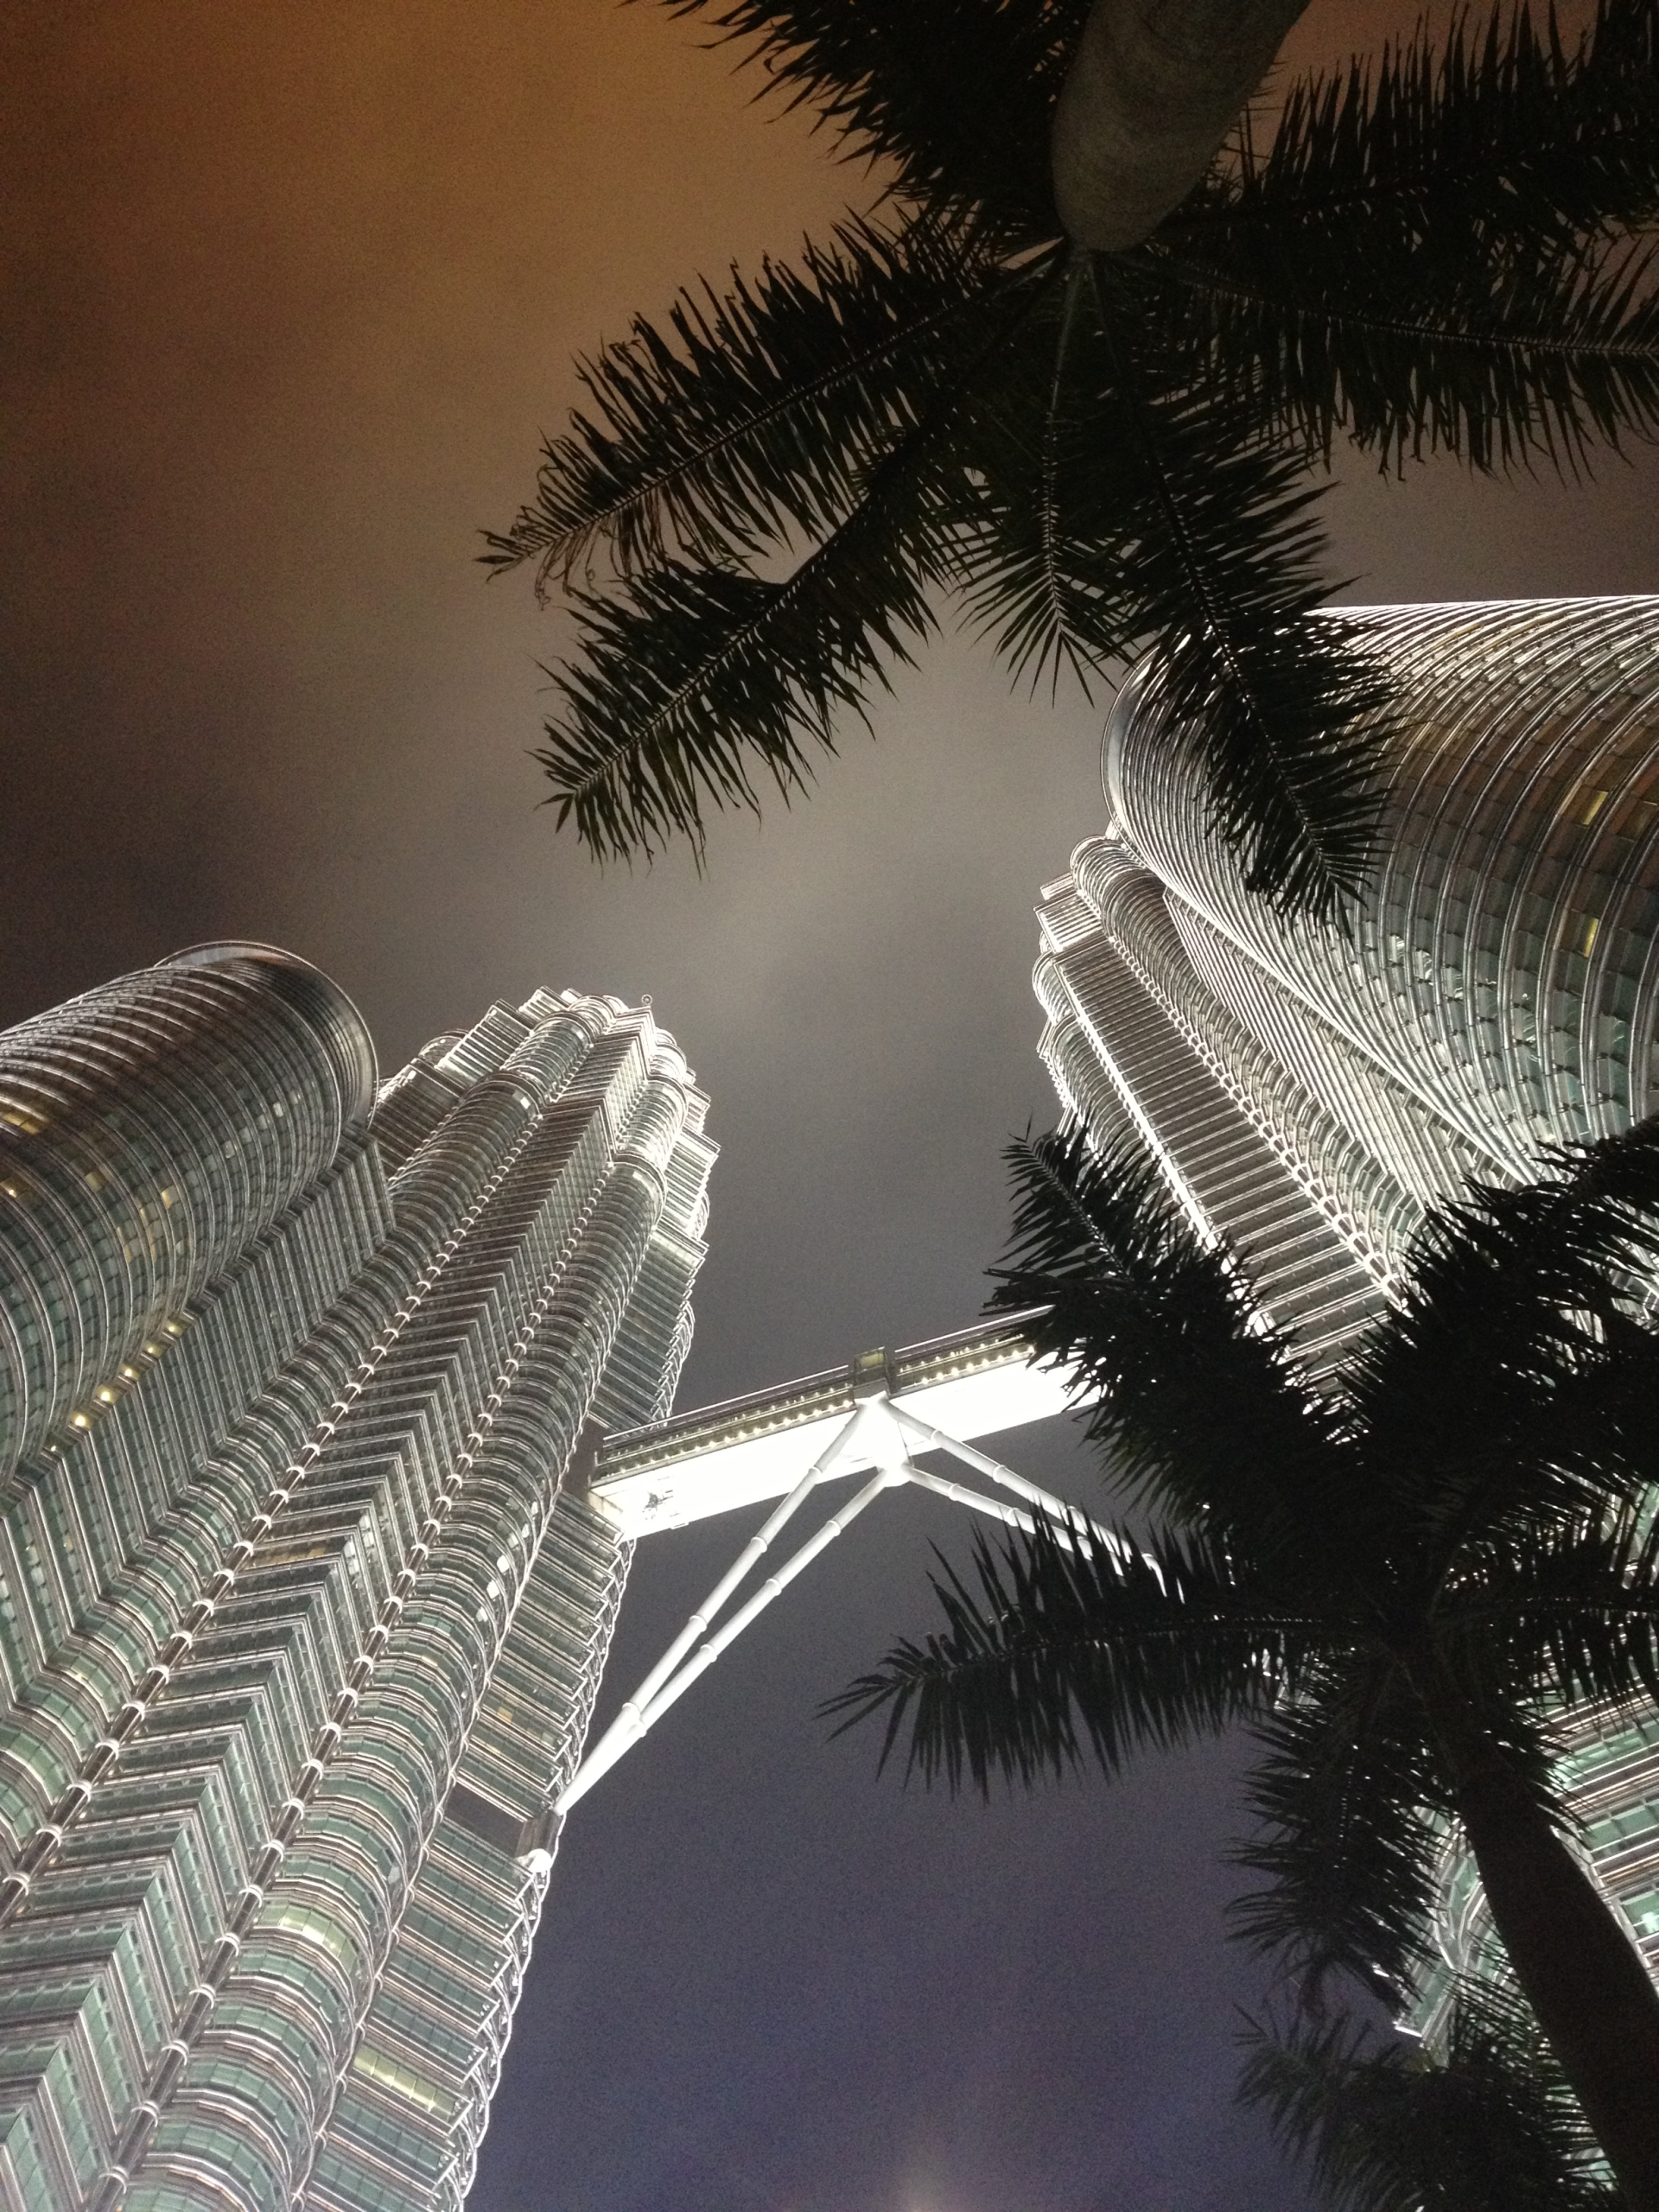 Zápisky z ciest: Kuala Lumpur - nočný pohľad na nasvietené veže Petronas Towers zospodu so siluetami paliem